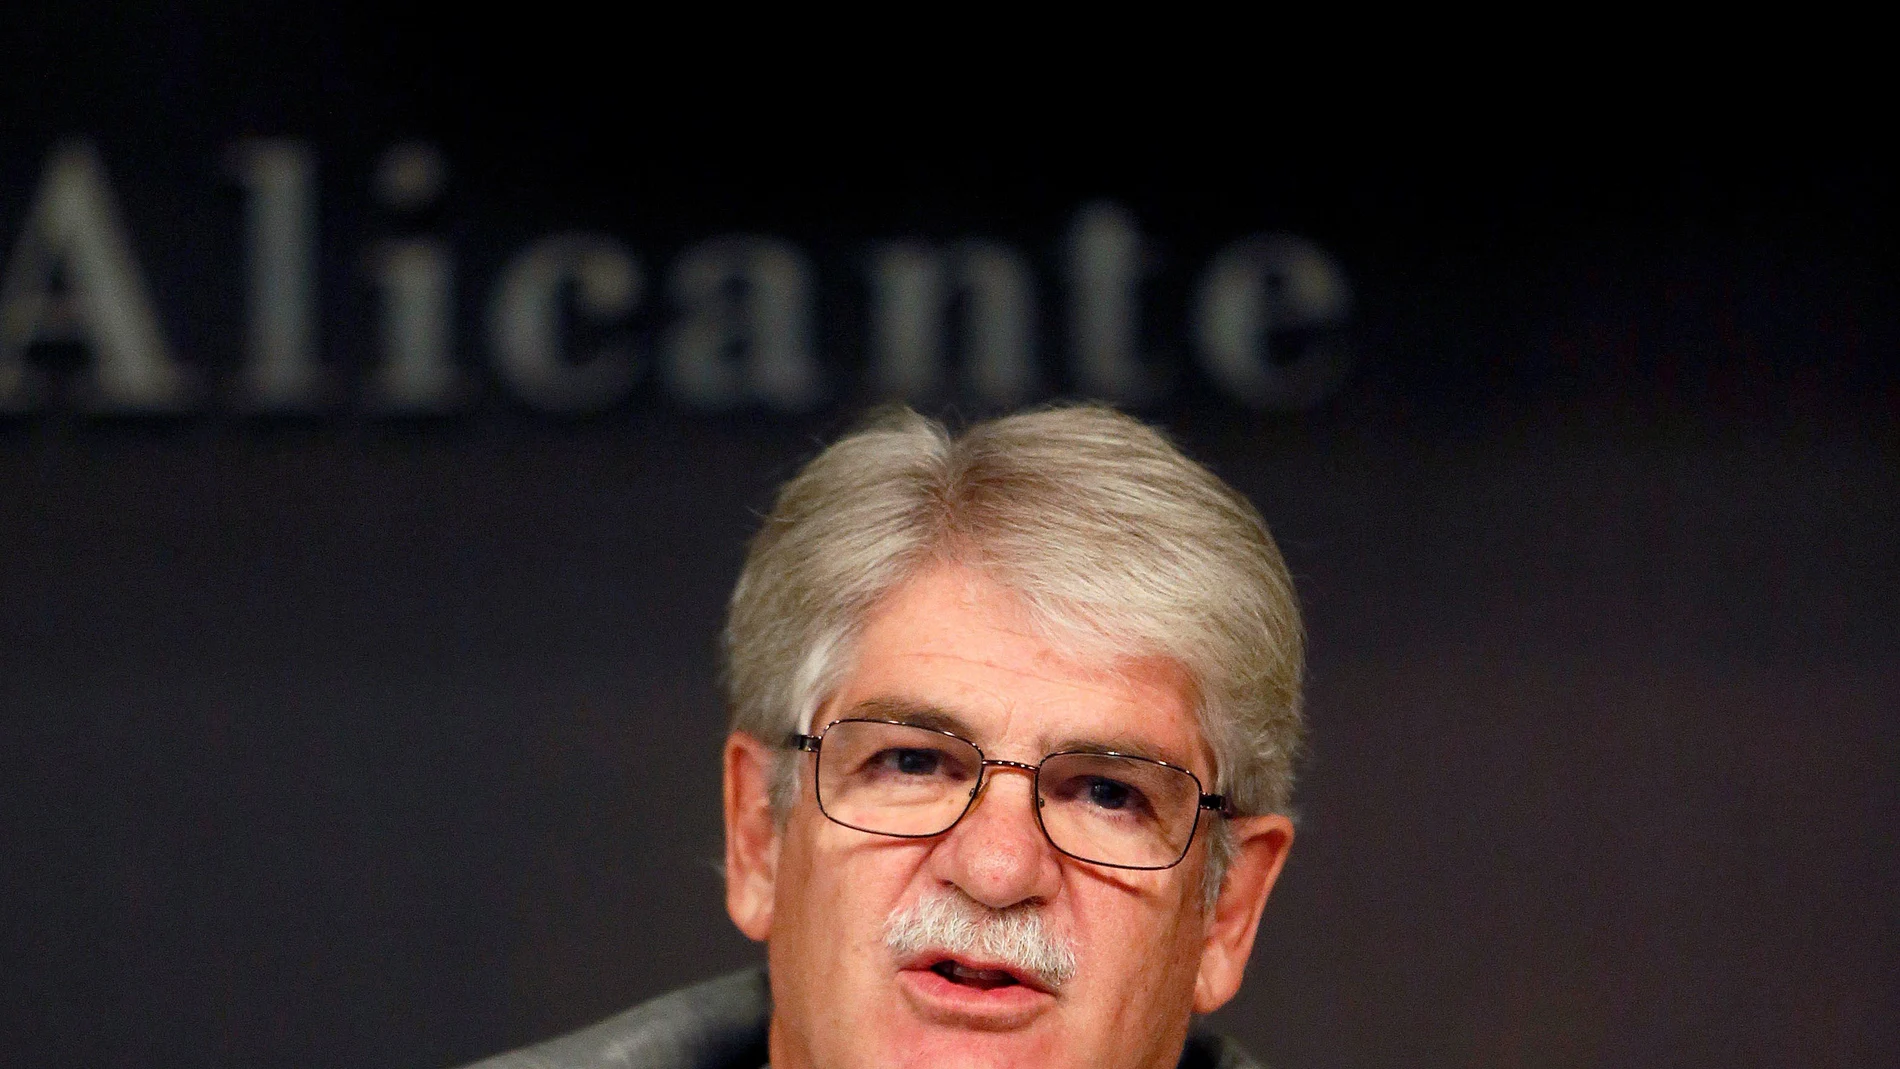 Alfonso Dastis, ministro de Asuntos Exteriores y Cooperación